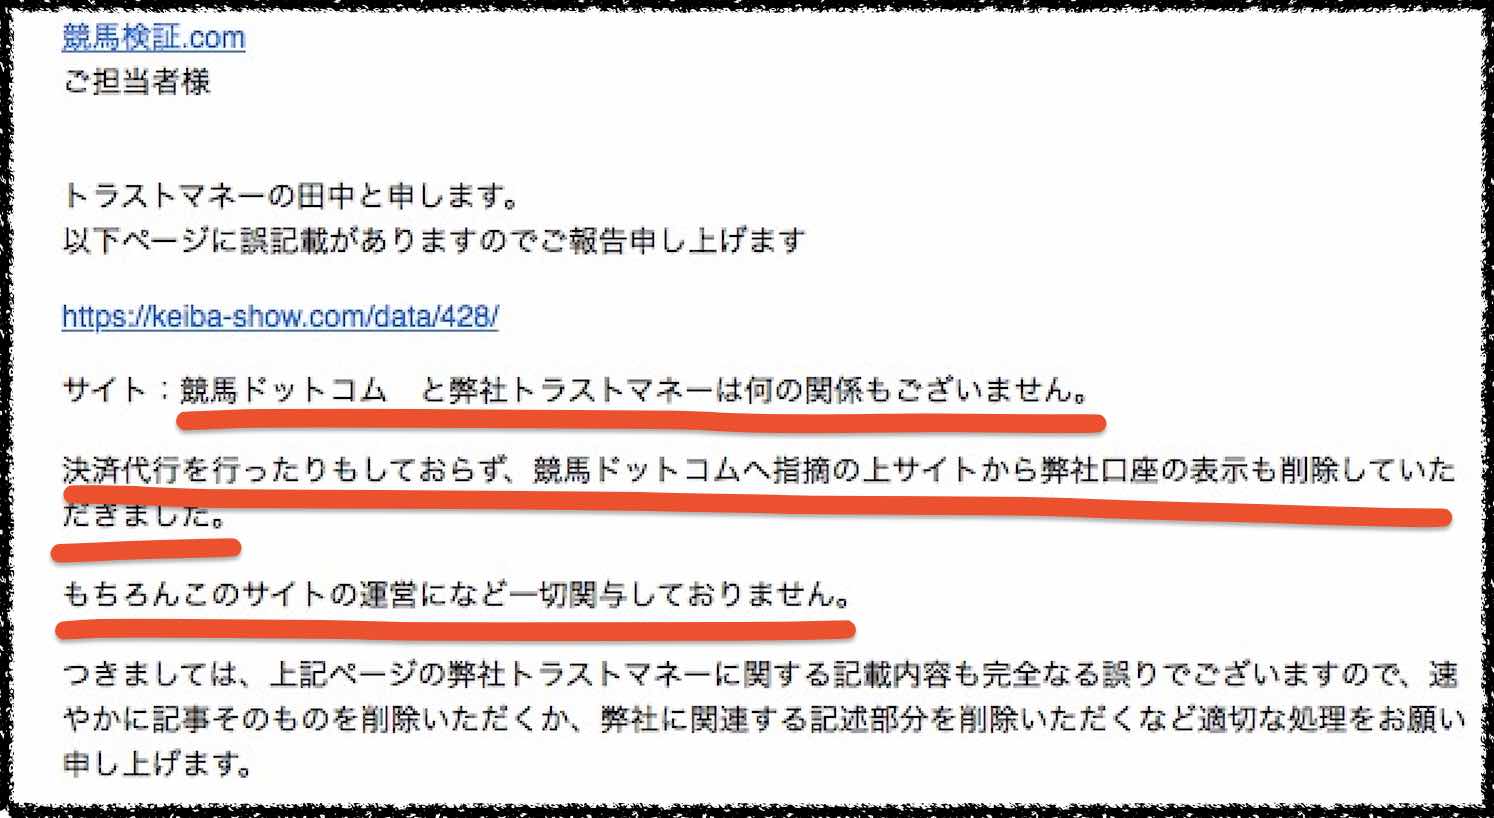 「株式会社トラストマネー」の田中様から頂いたメール